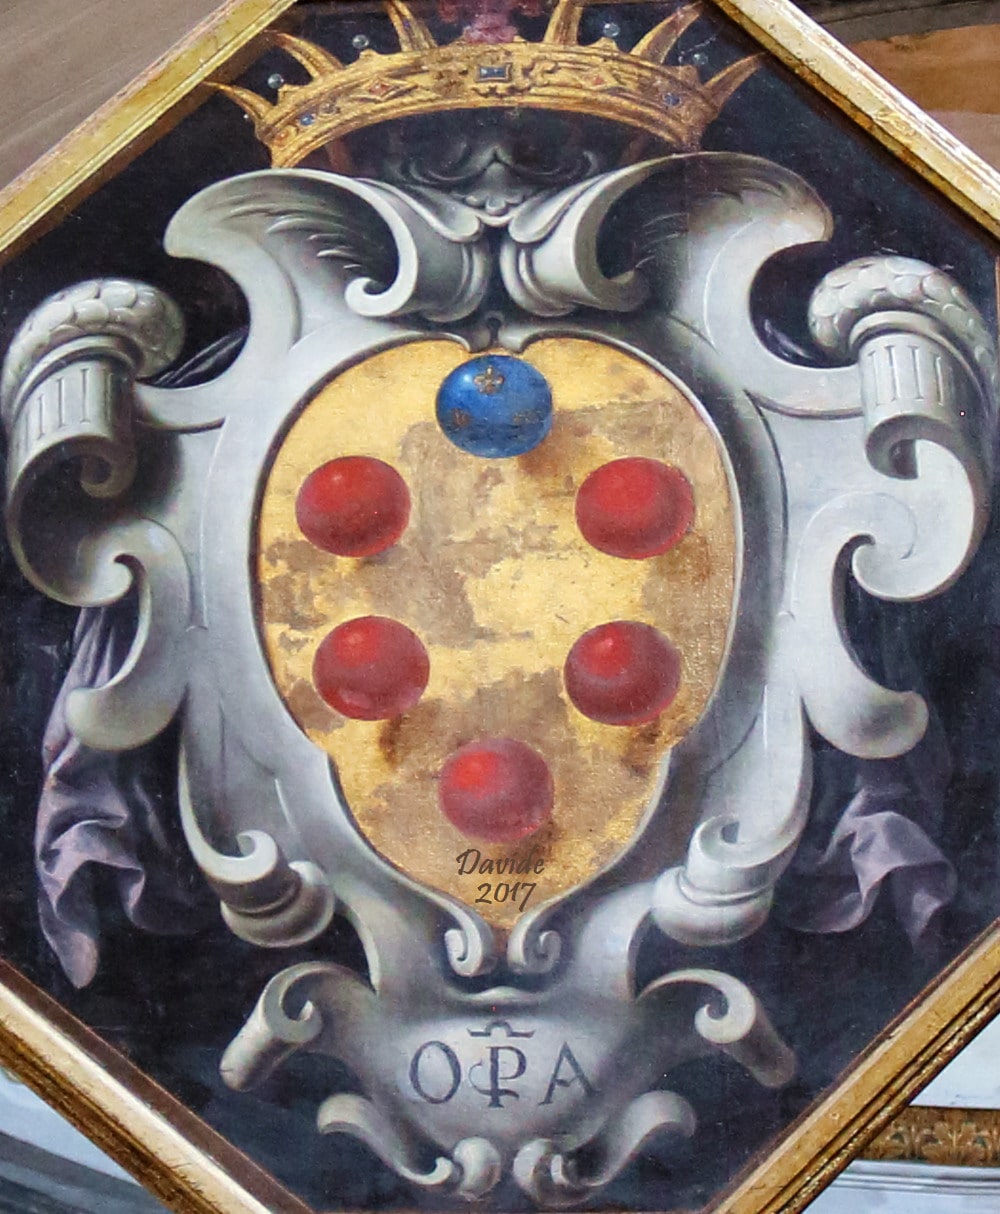 Jacopo Vignali (1592-1664), “Stemma mediceo”, olio su tela, 1652 (particolare). Pietrasanta (Lucca, Toscana – Versilia, Italia), Duomo di San Martino